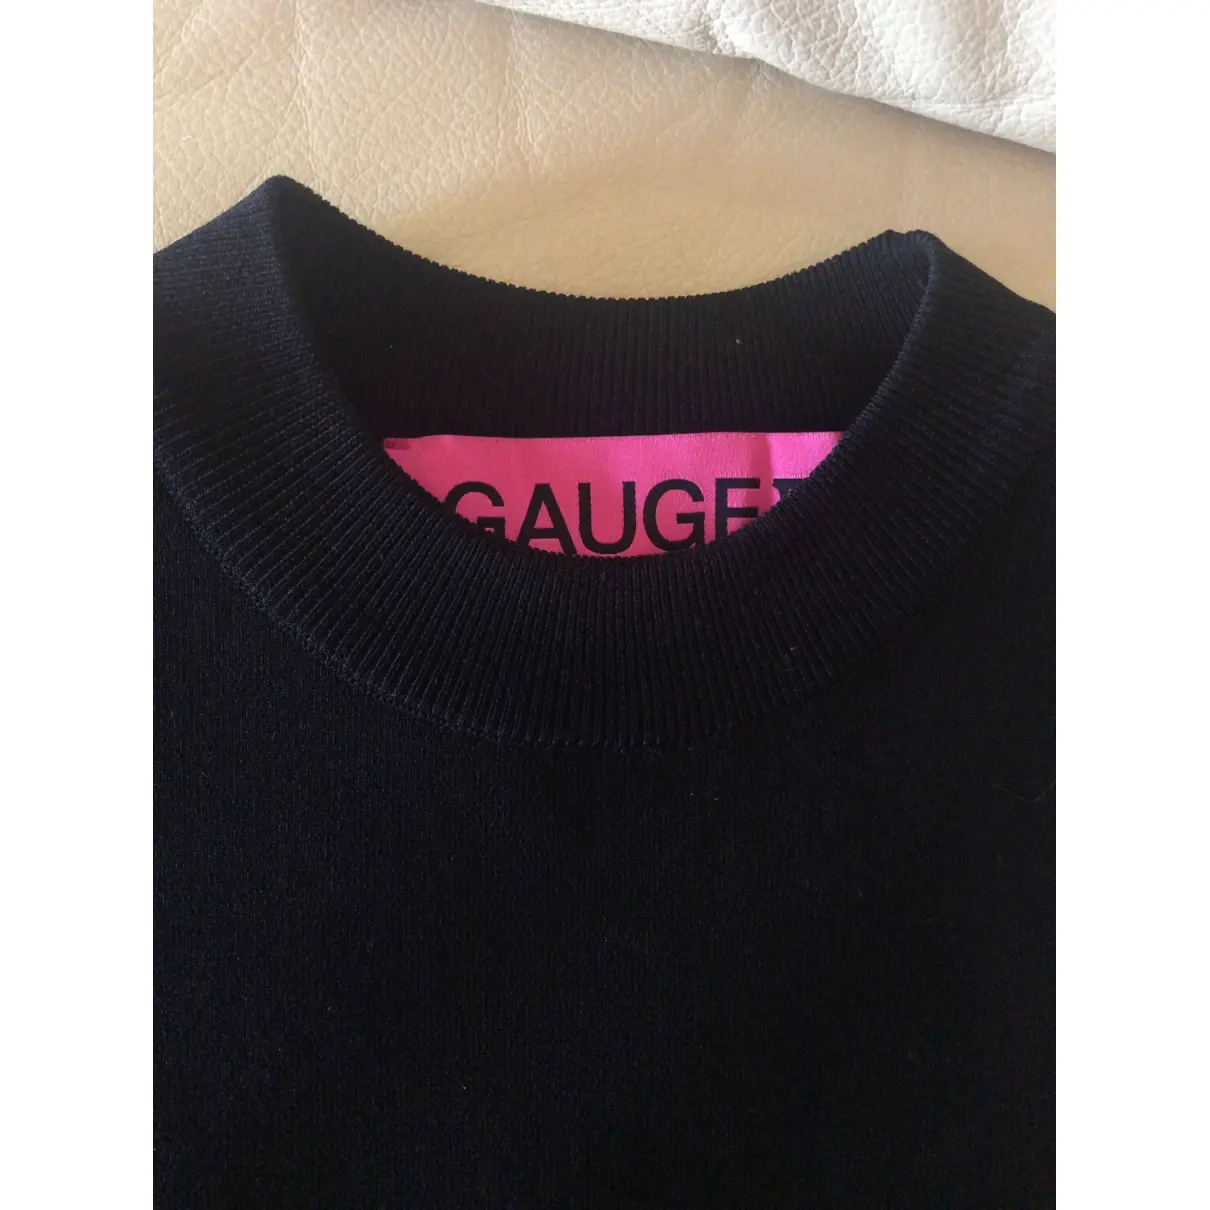 Buy Gauge81 Mini dress online